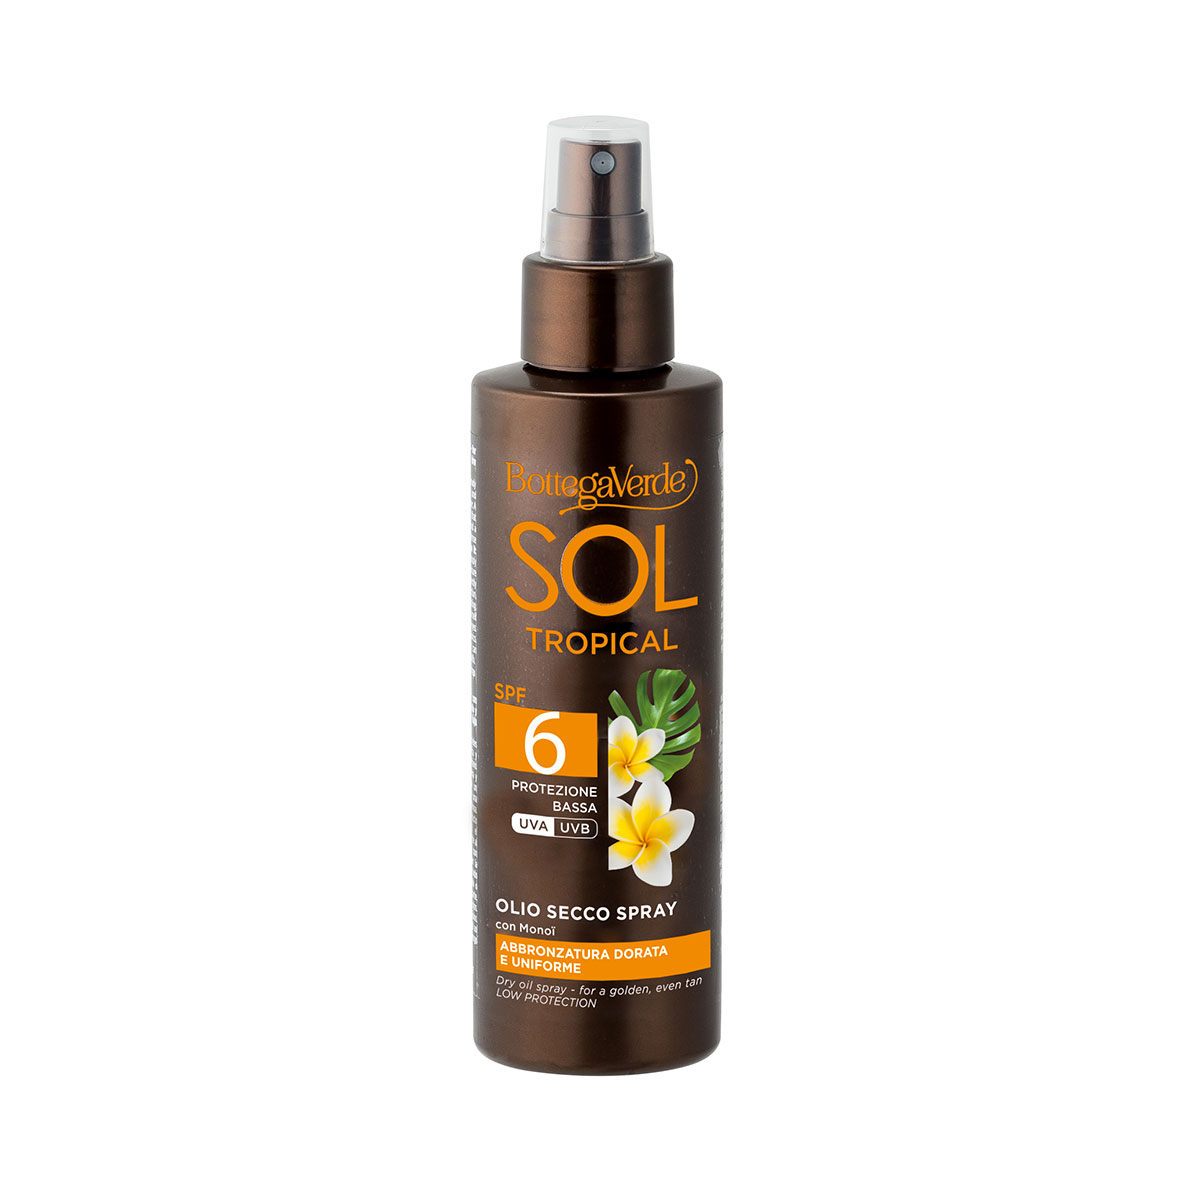 SOL Tropical - Olio secco spray - abbronzatura dorata e uniforme - con Monoï - protezione bassa SPF 6